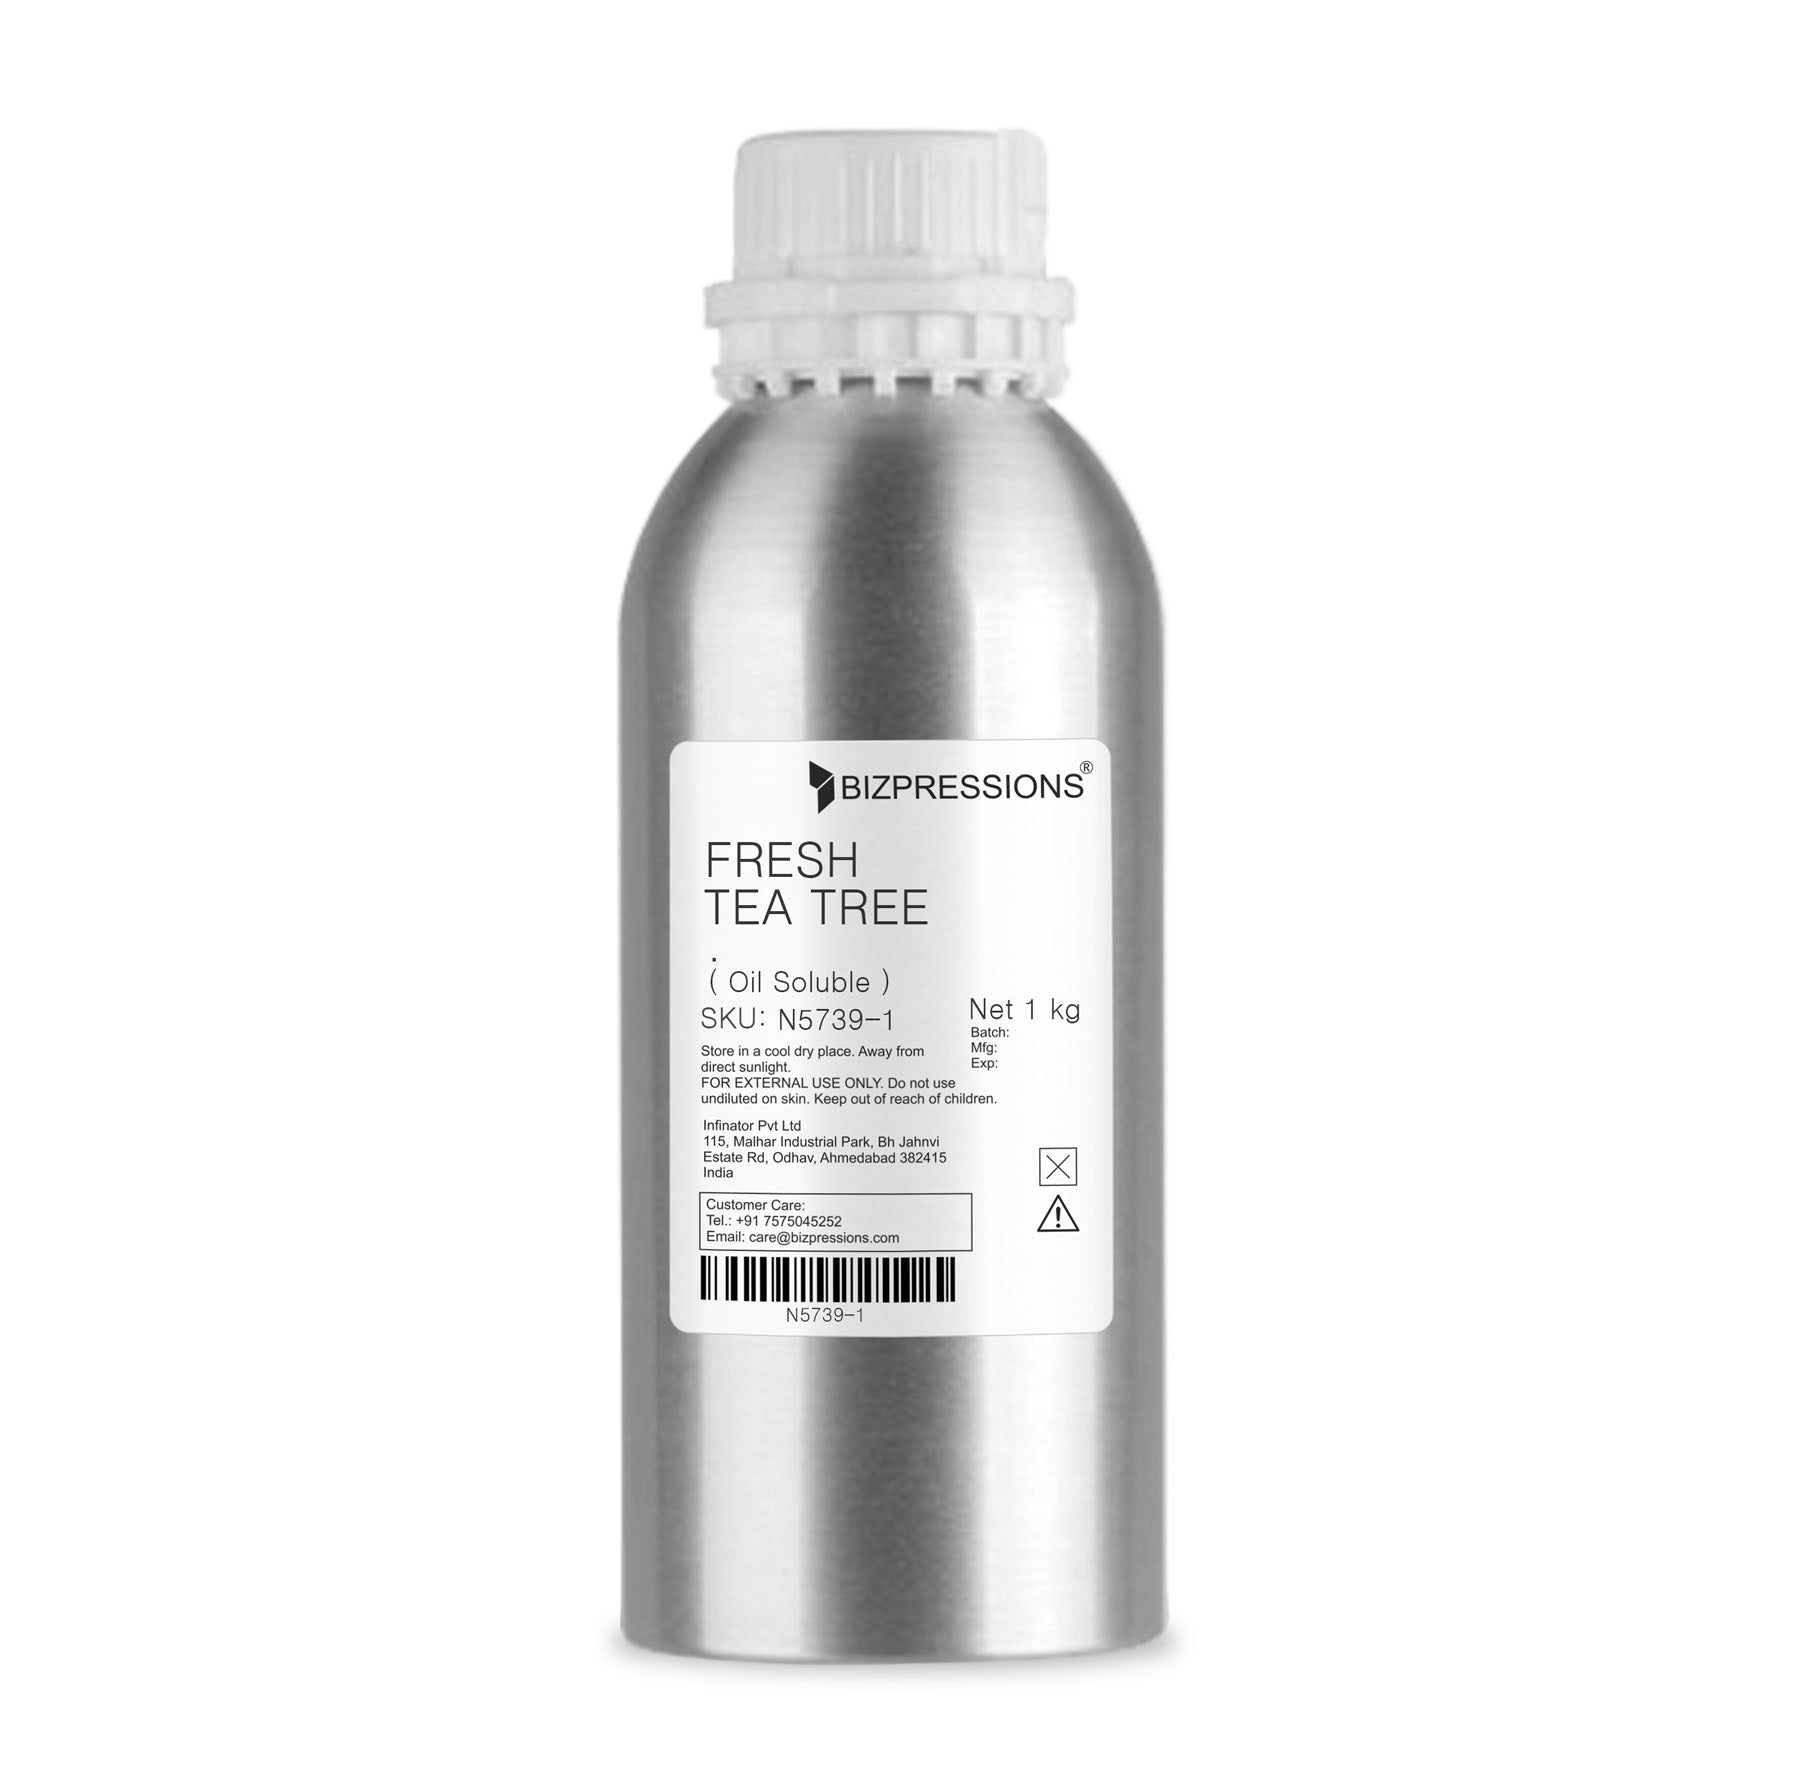 FRESH TEA TREE - Fragrance ( Oil Soluble ) - 1 kg